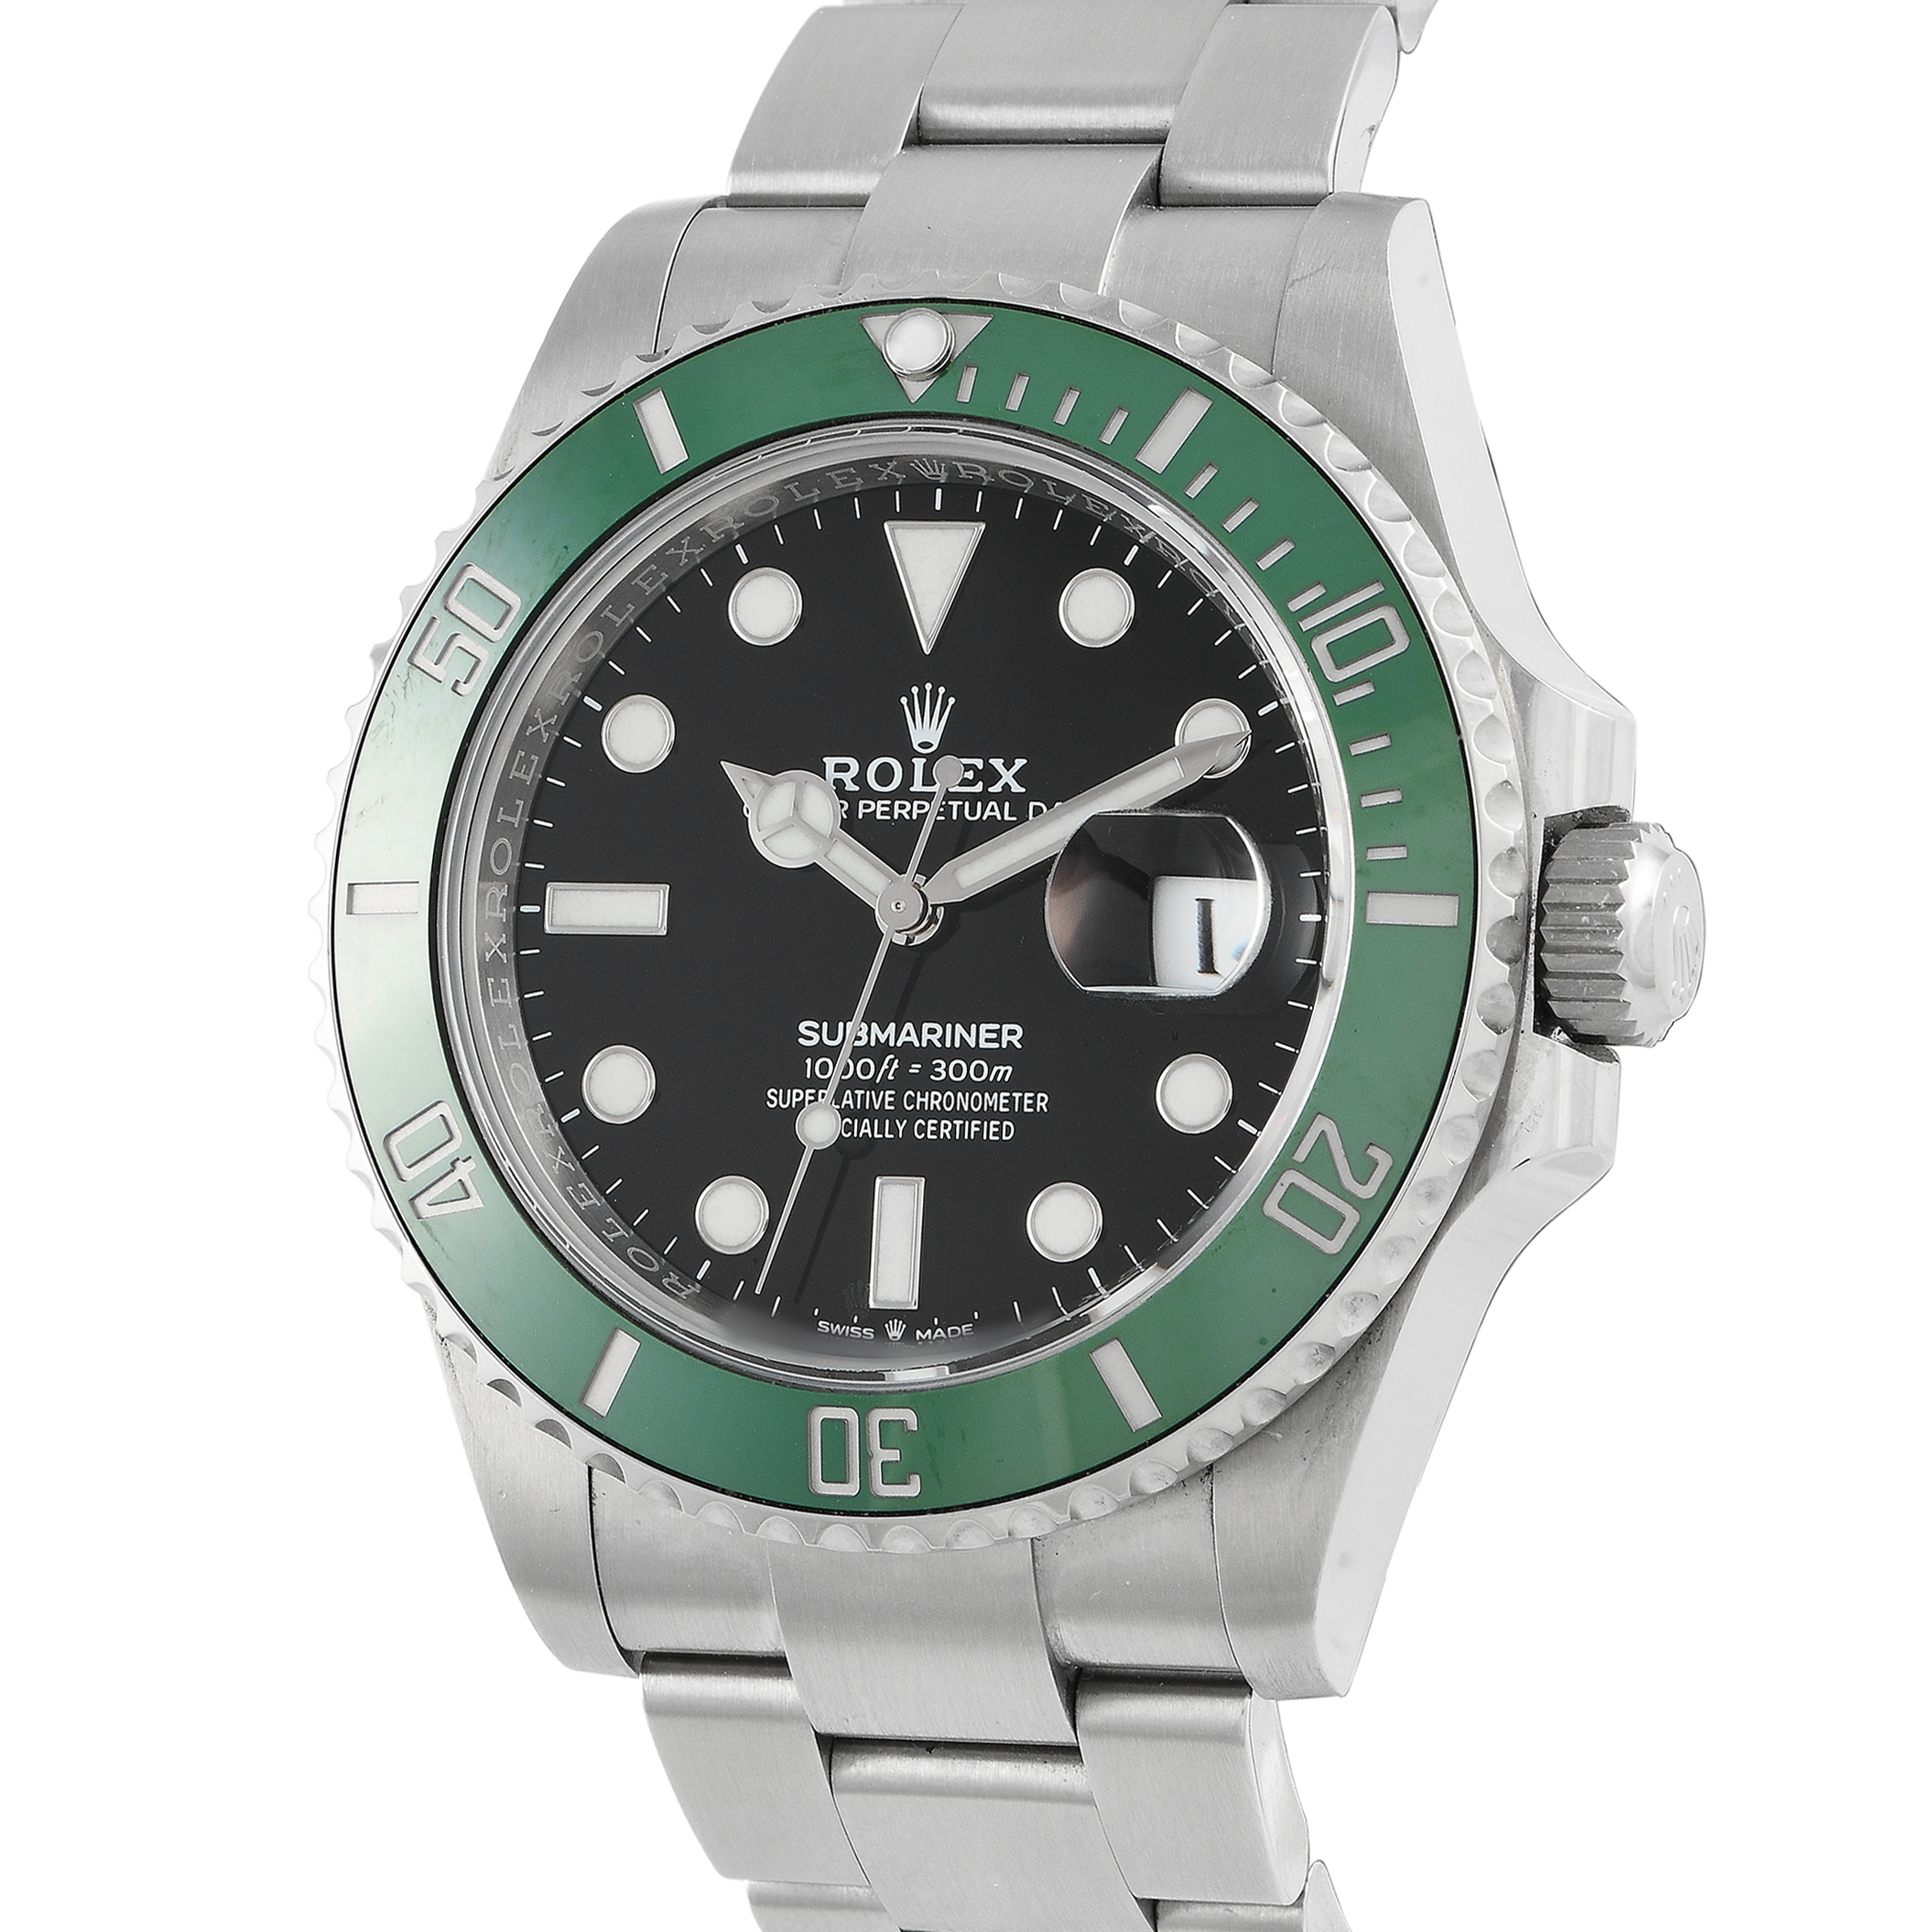 Rolex Submariner Date Watch 126610LV